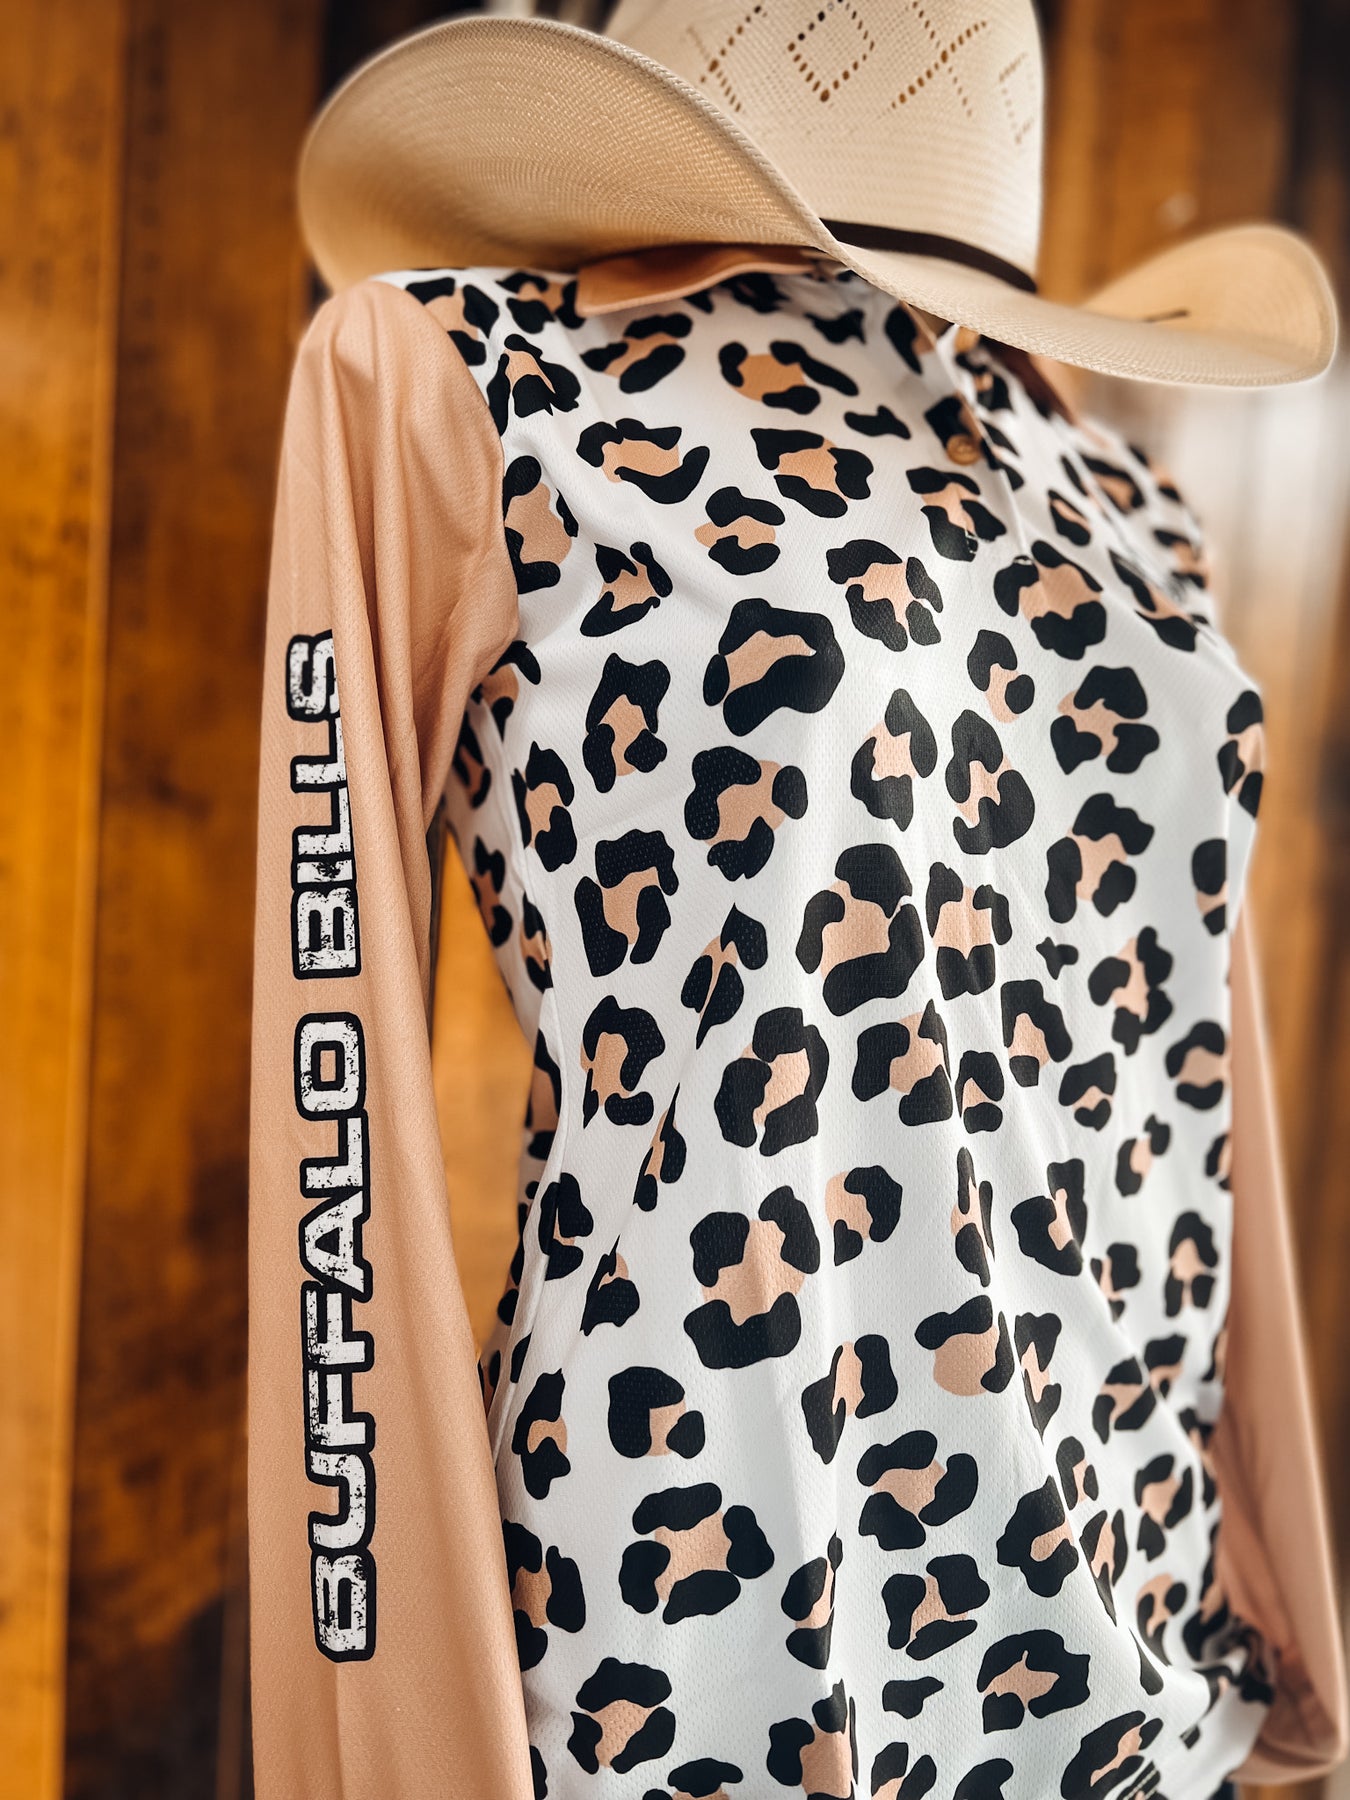 BBWS - Womens Cheetah Fishing Shirt at Buffalo Bills Western – Buffalo  Bills Western Store